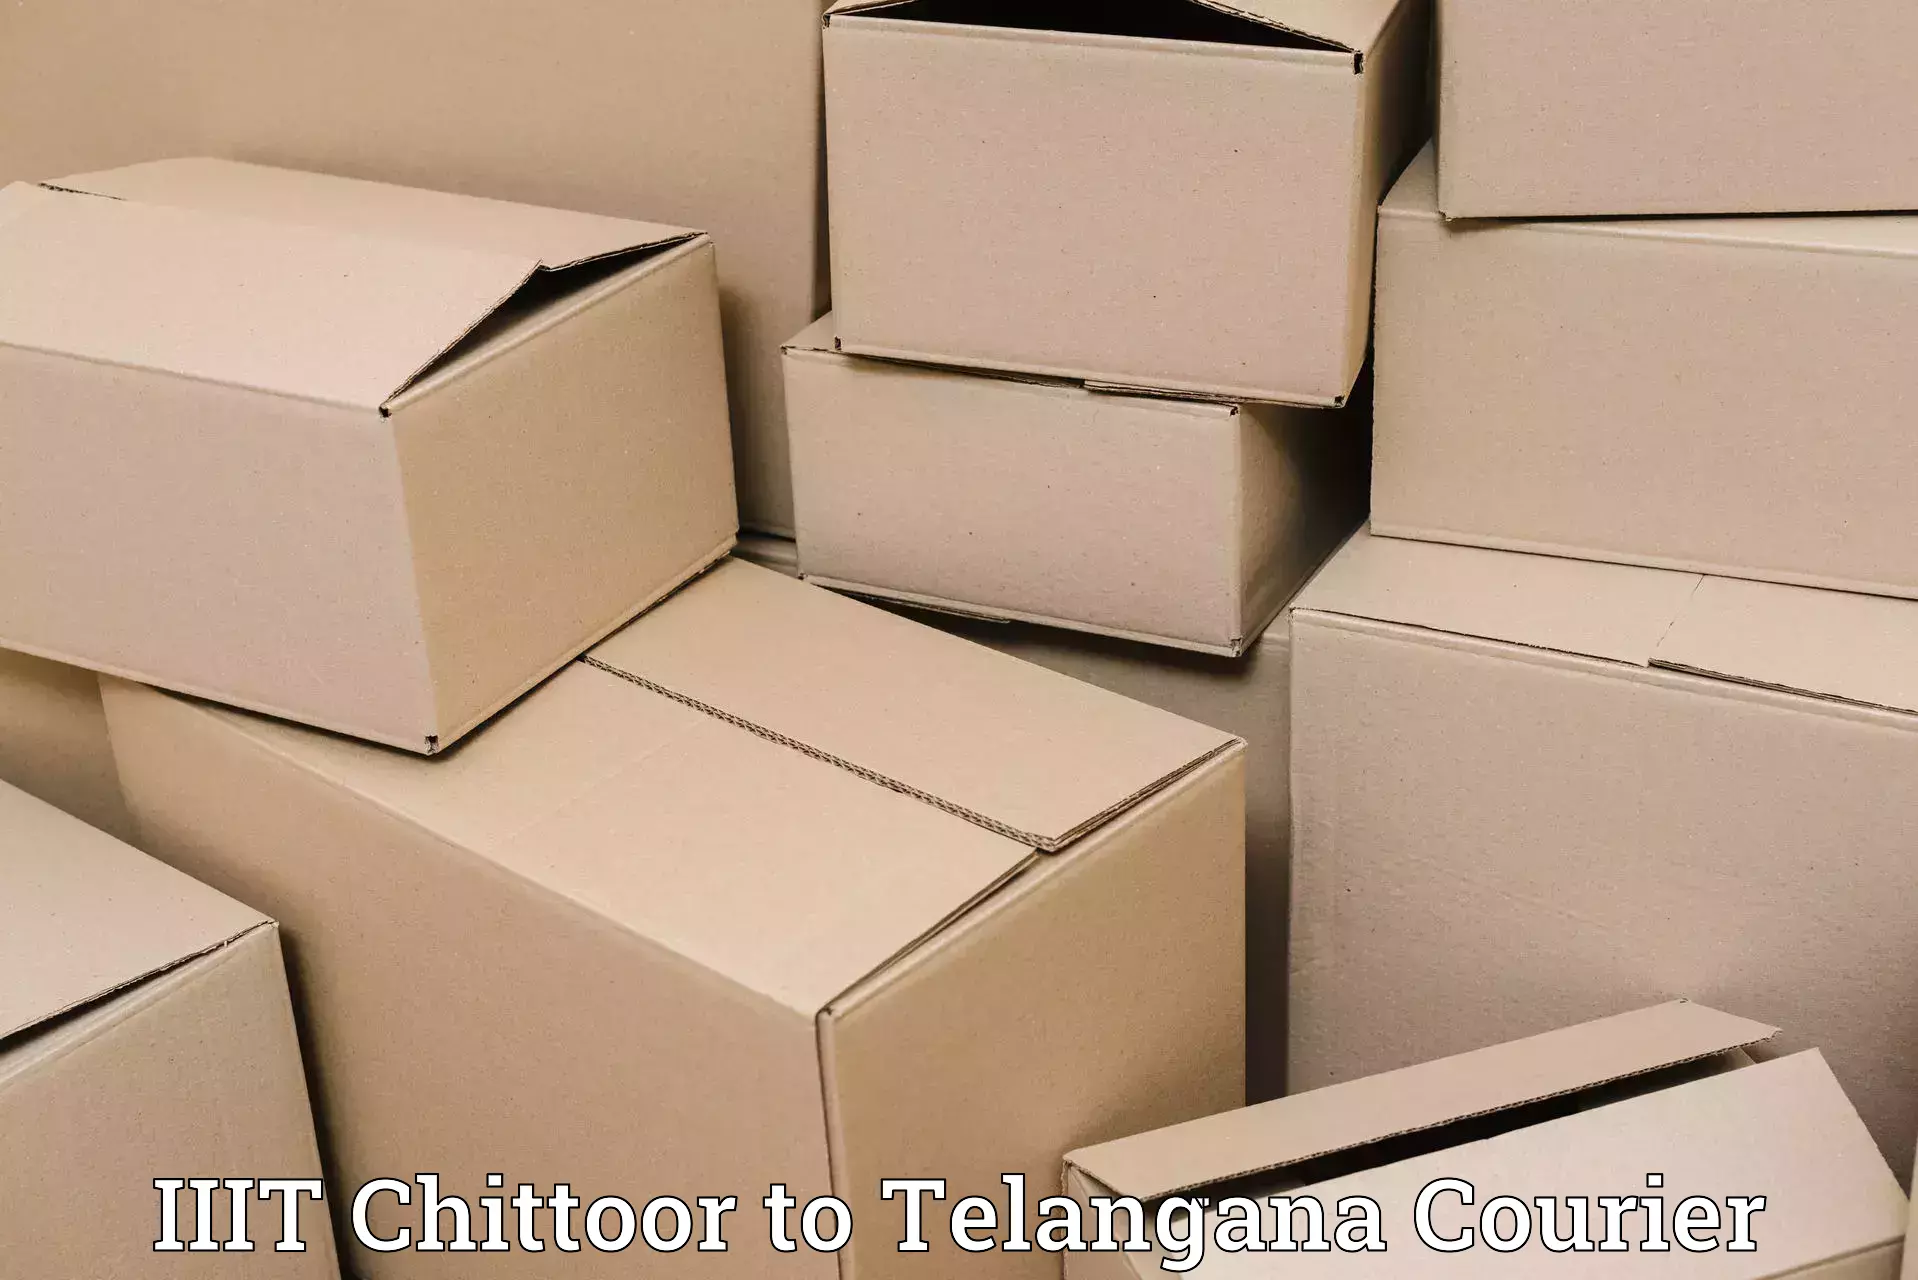 High-efficiency logistics IIIT Chittoor to Mahabub Nagar